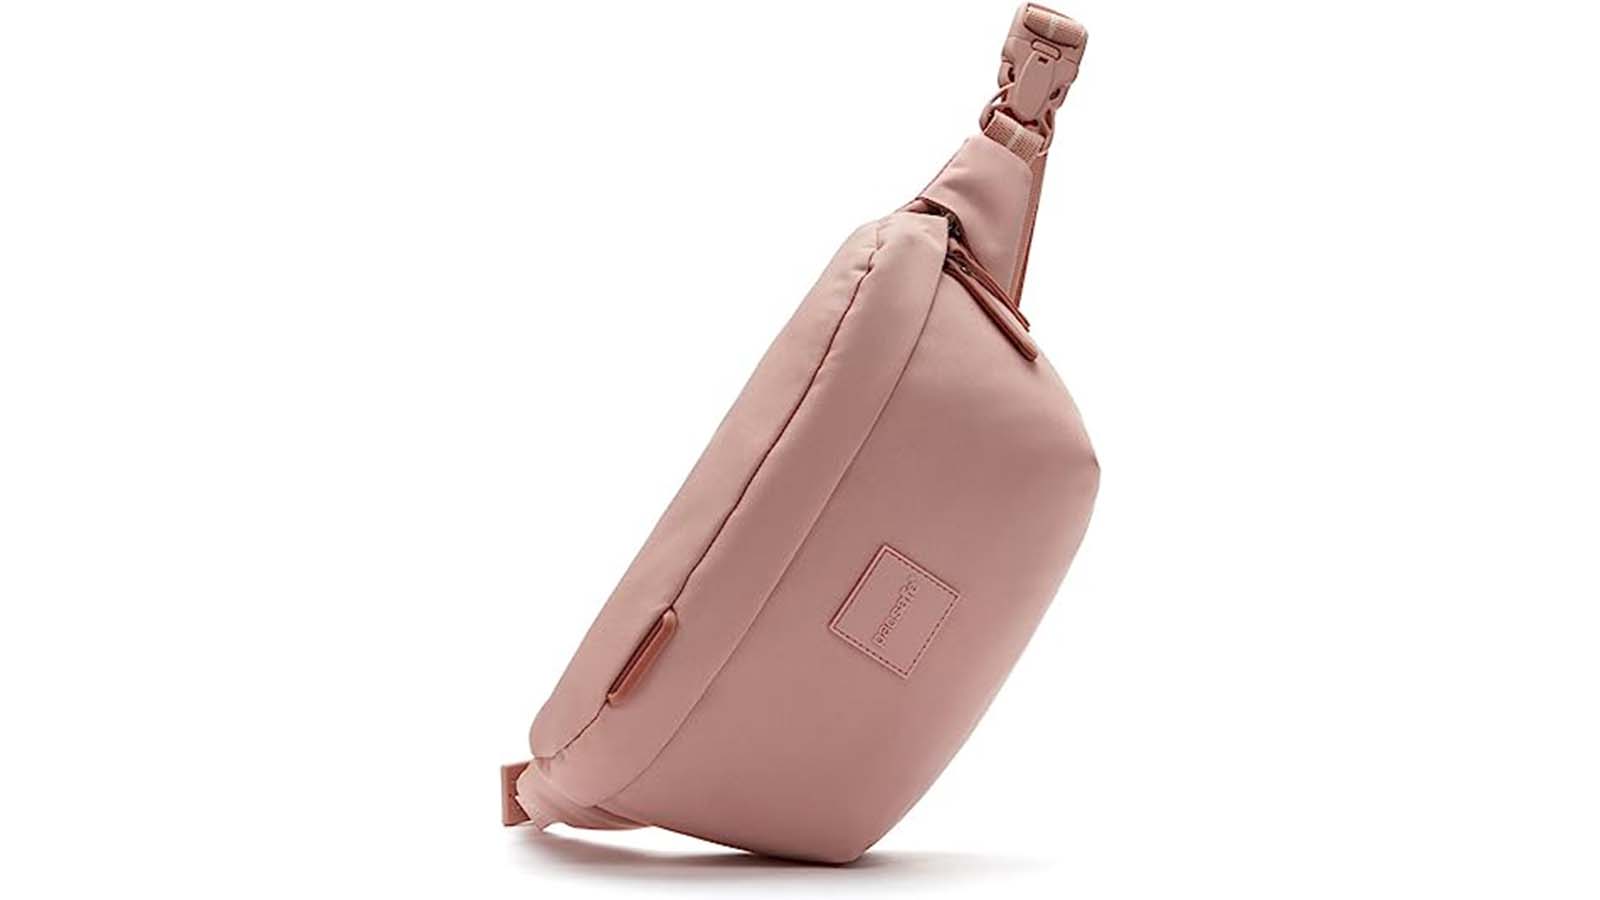 Sling Handbags for Women- Sling Bags for Girls-Sling Bags for Women Stylish  & Handbag Combo Set & Bagpack